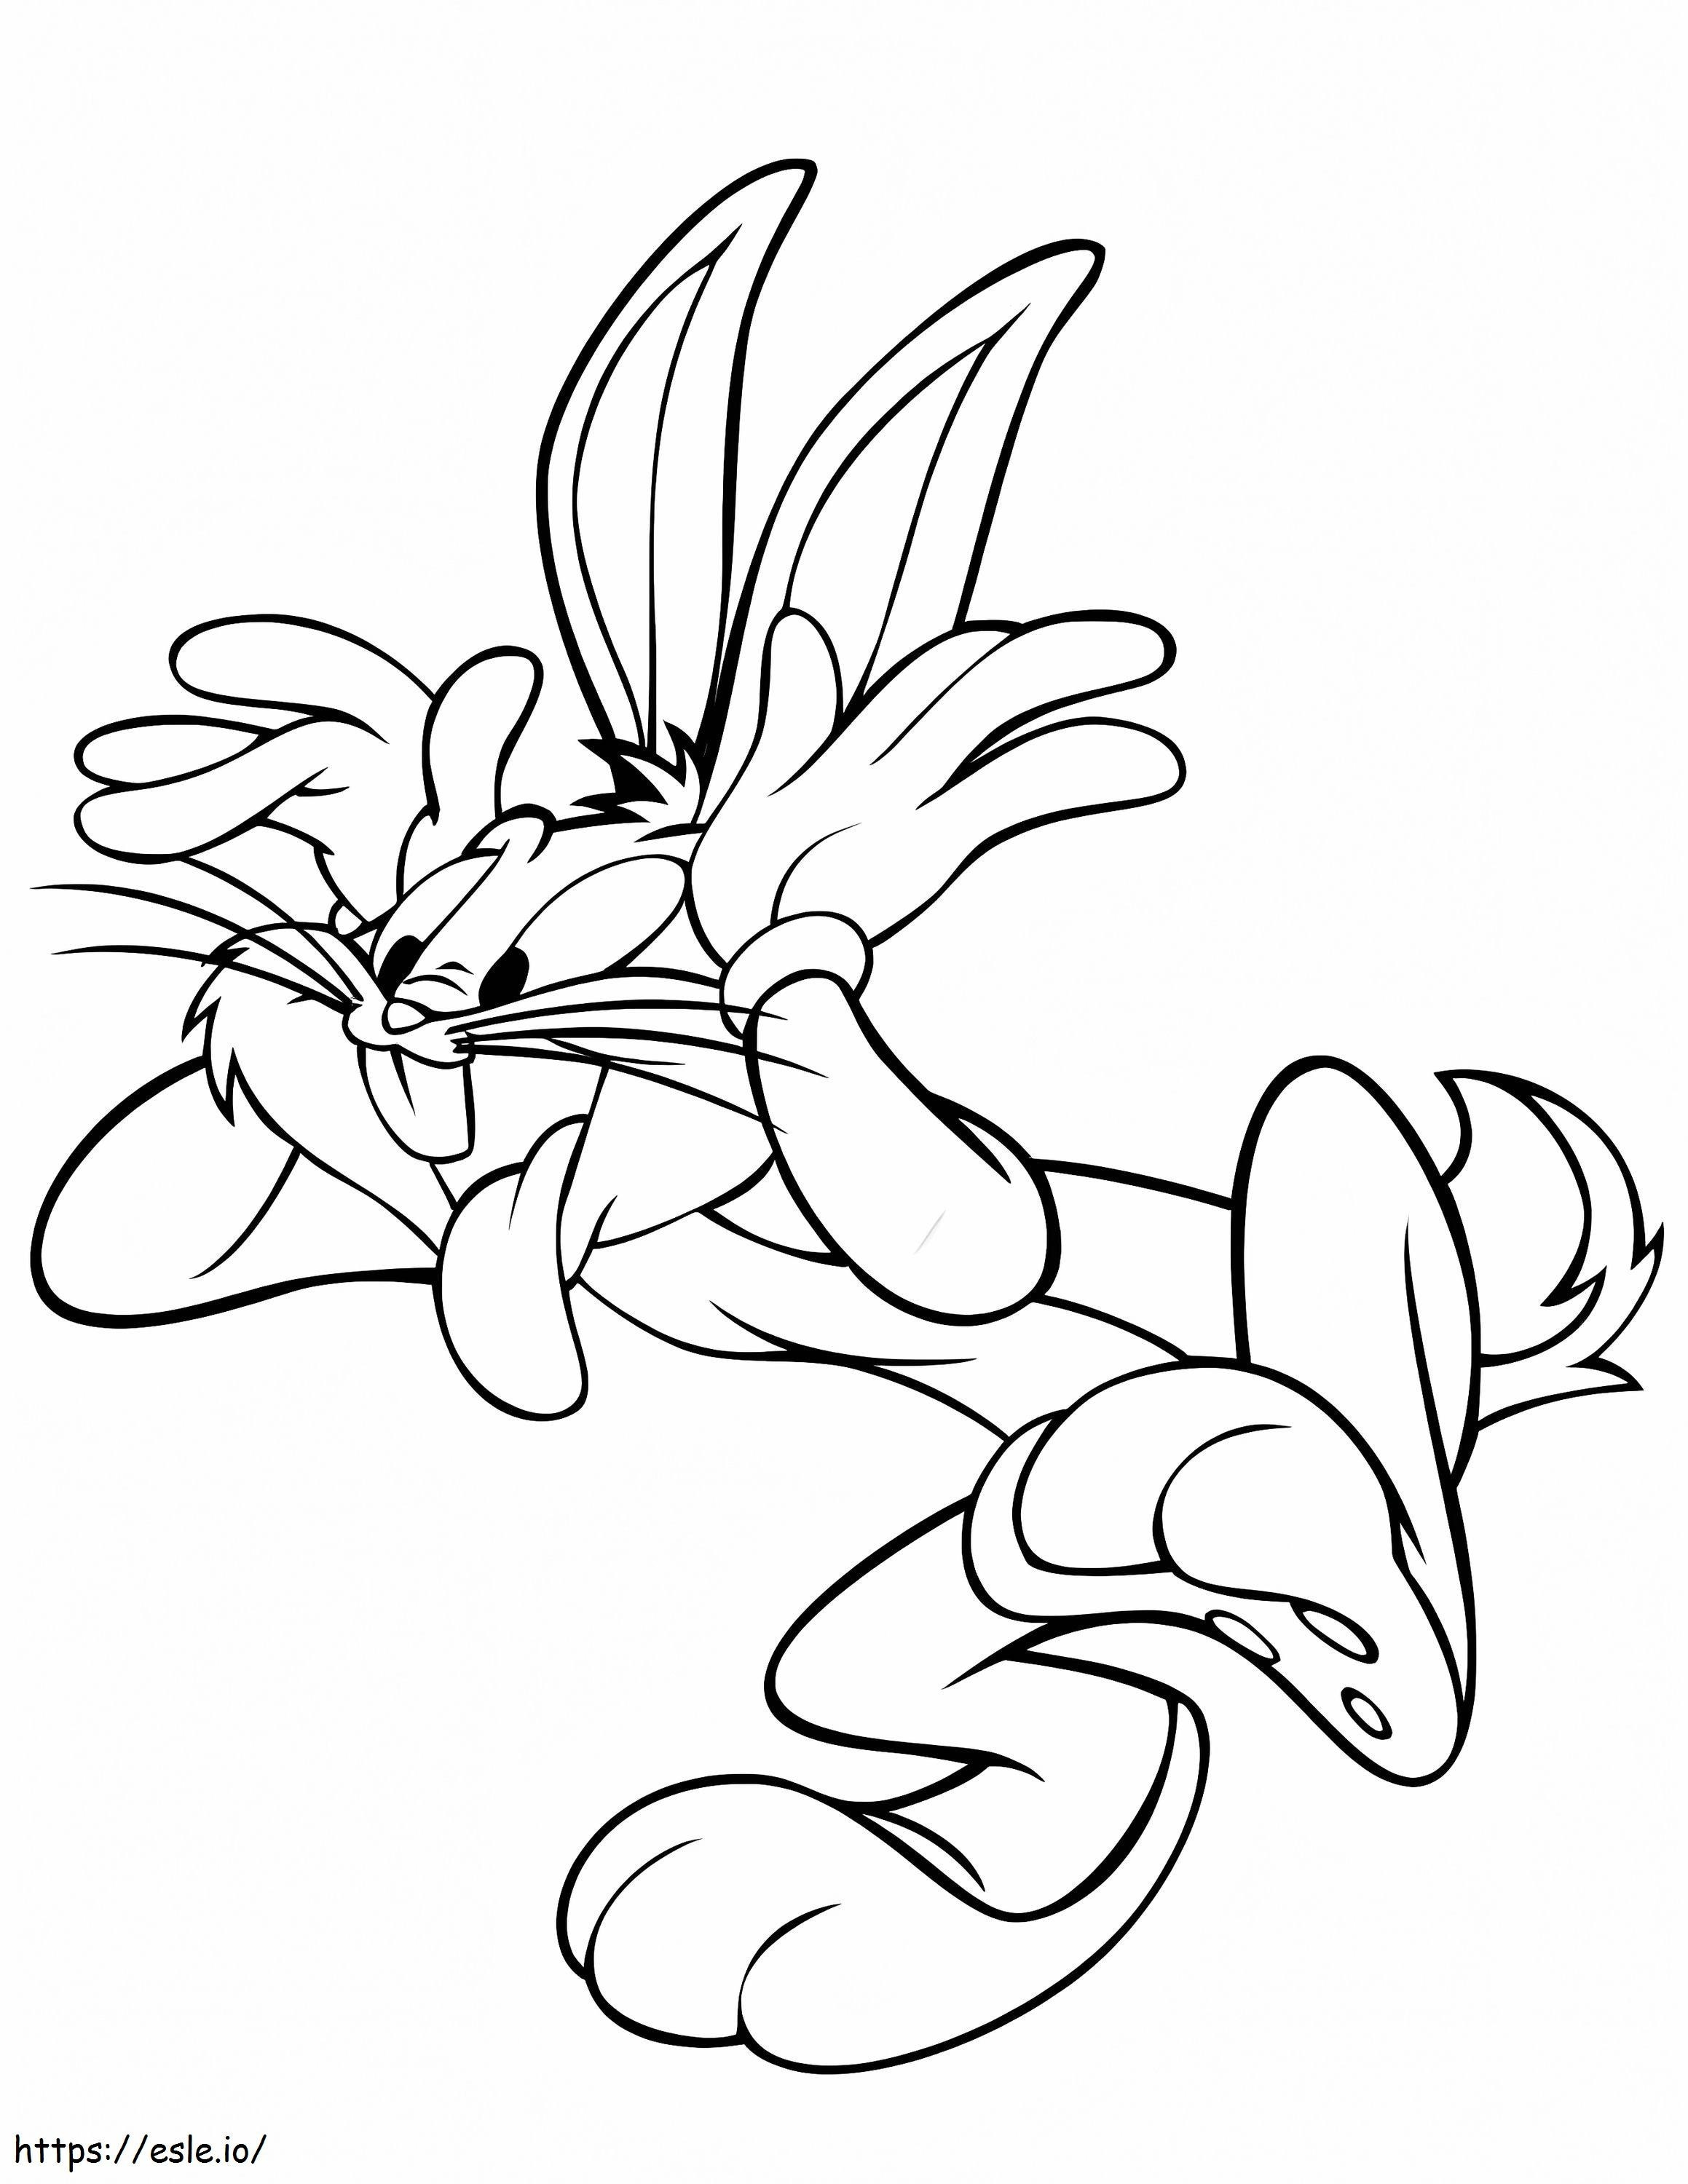 Grappige Bugs Bunny kleurplaat kleurplaat